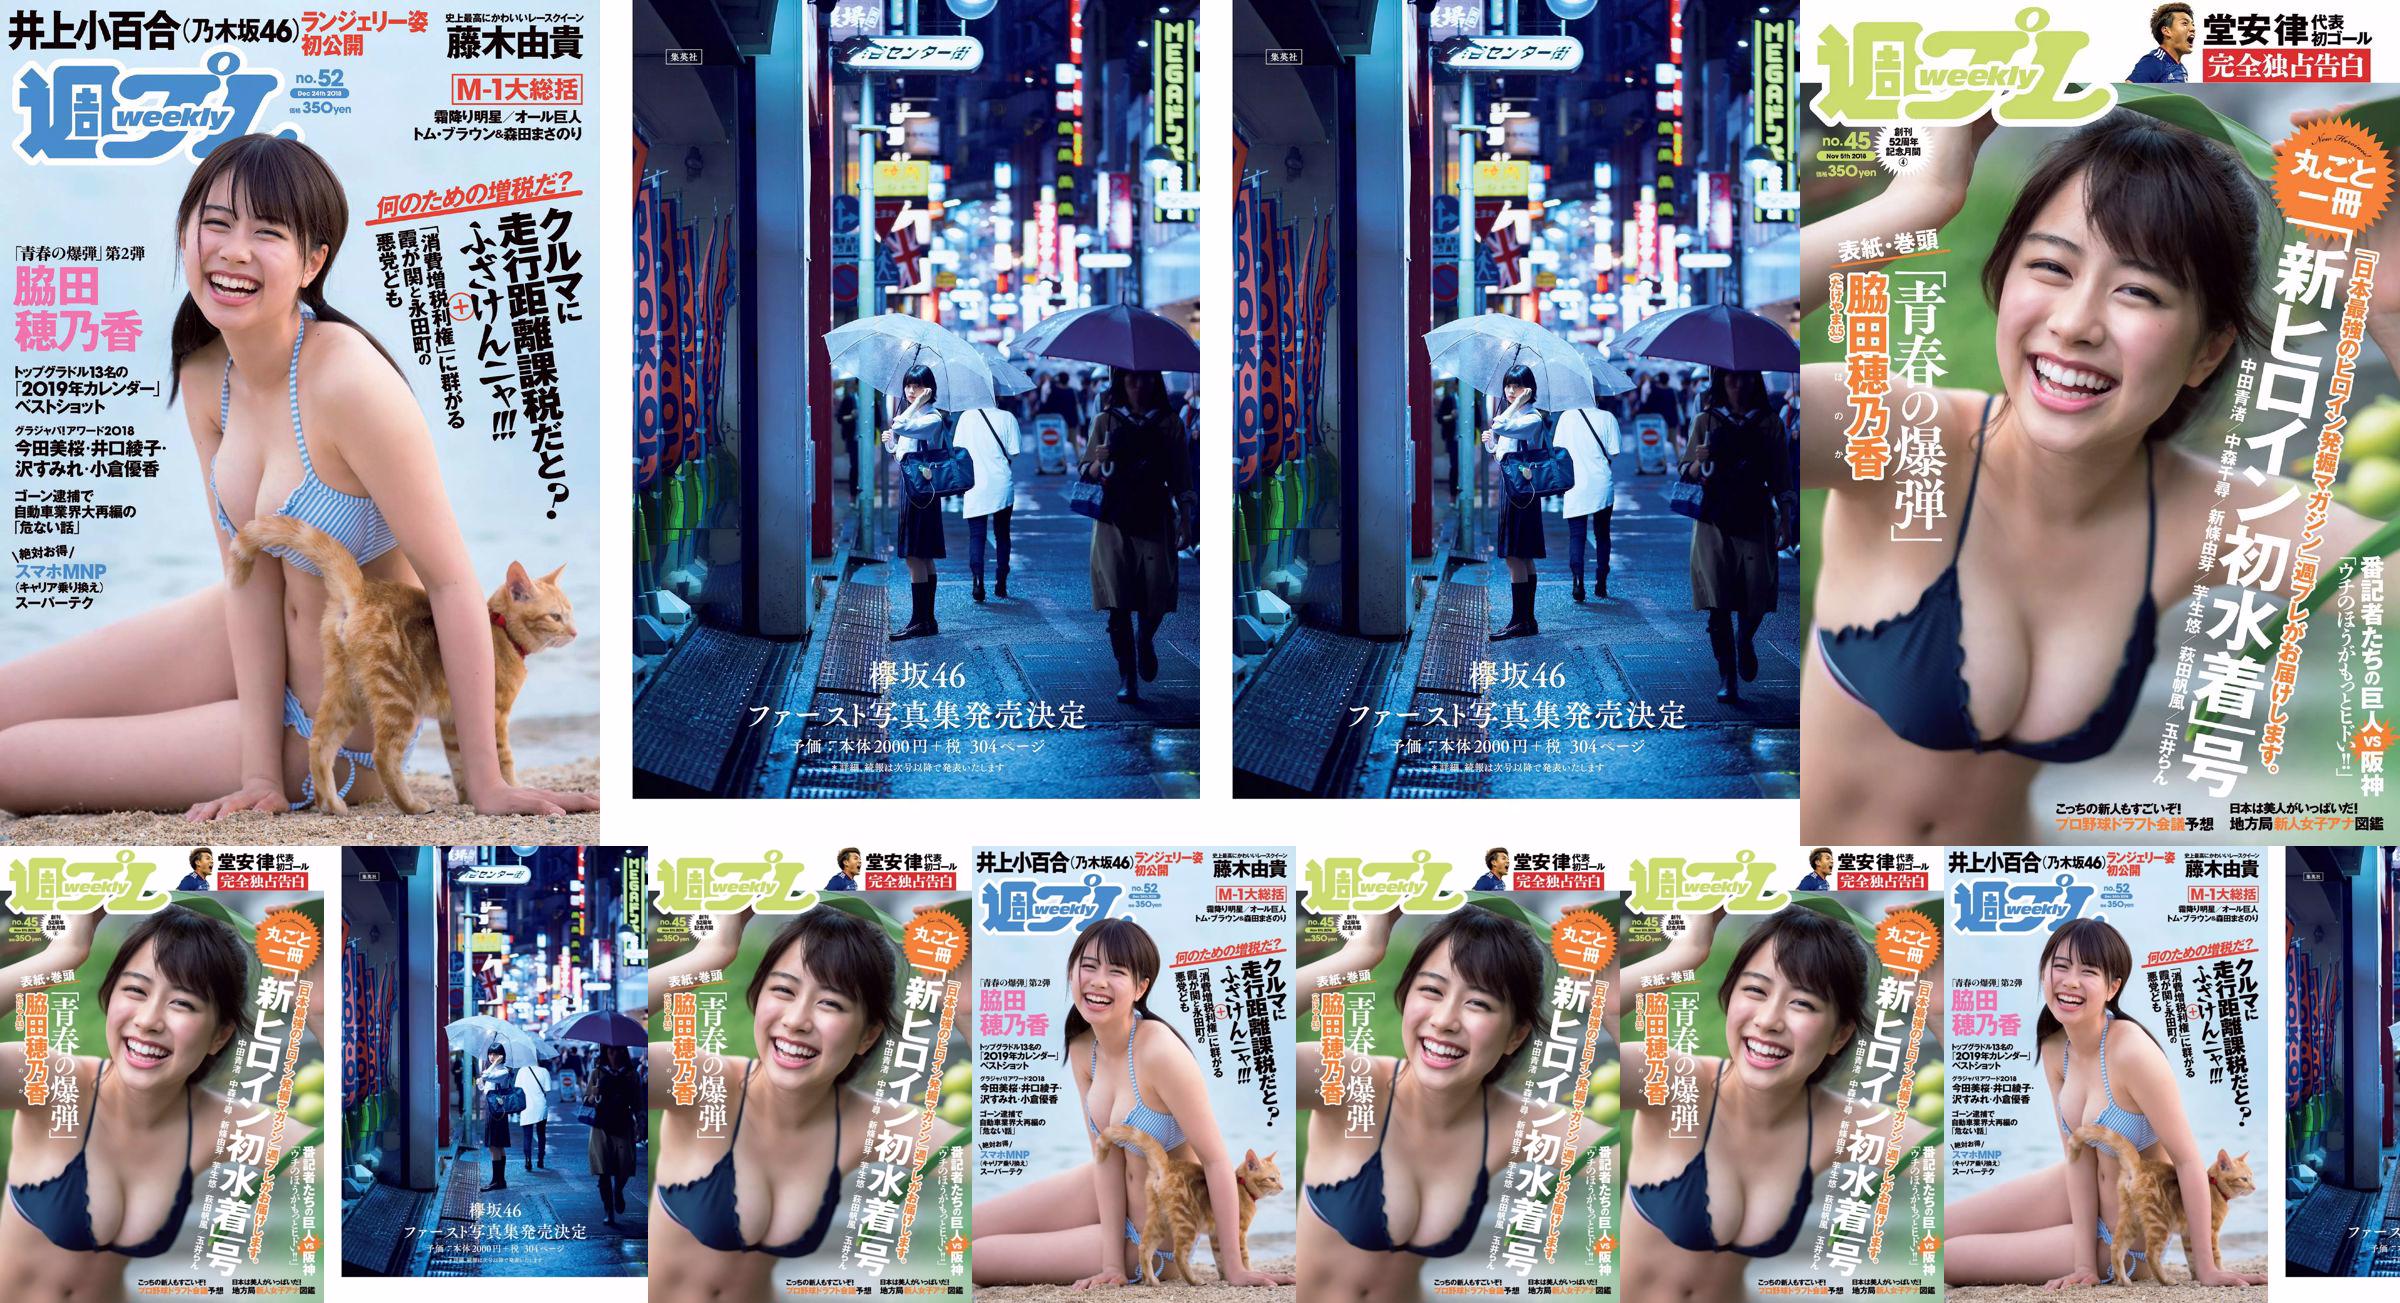 Wakada Honoka, Inoue Sayuri, Mizusawa Yuno, Fujiki Yuki, Koizumi Haruka, Kaito みらい, Tachiki Ayano [Weekly Playboy] นิตยสารภาพถ่ายฉบับที่ 52 ประจำปี 2018 No.57ae1d หน้า 1